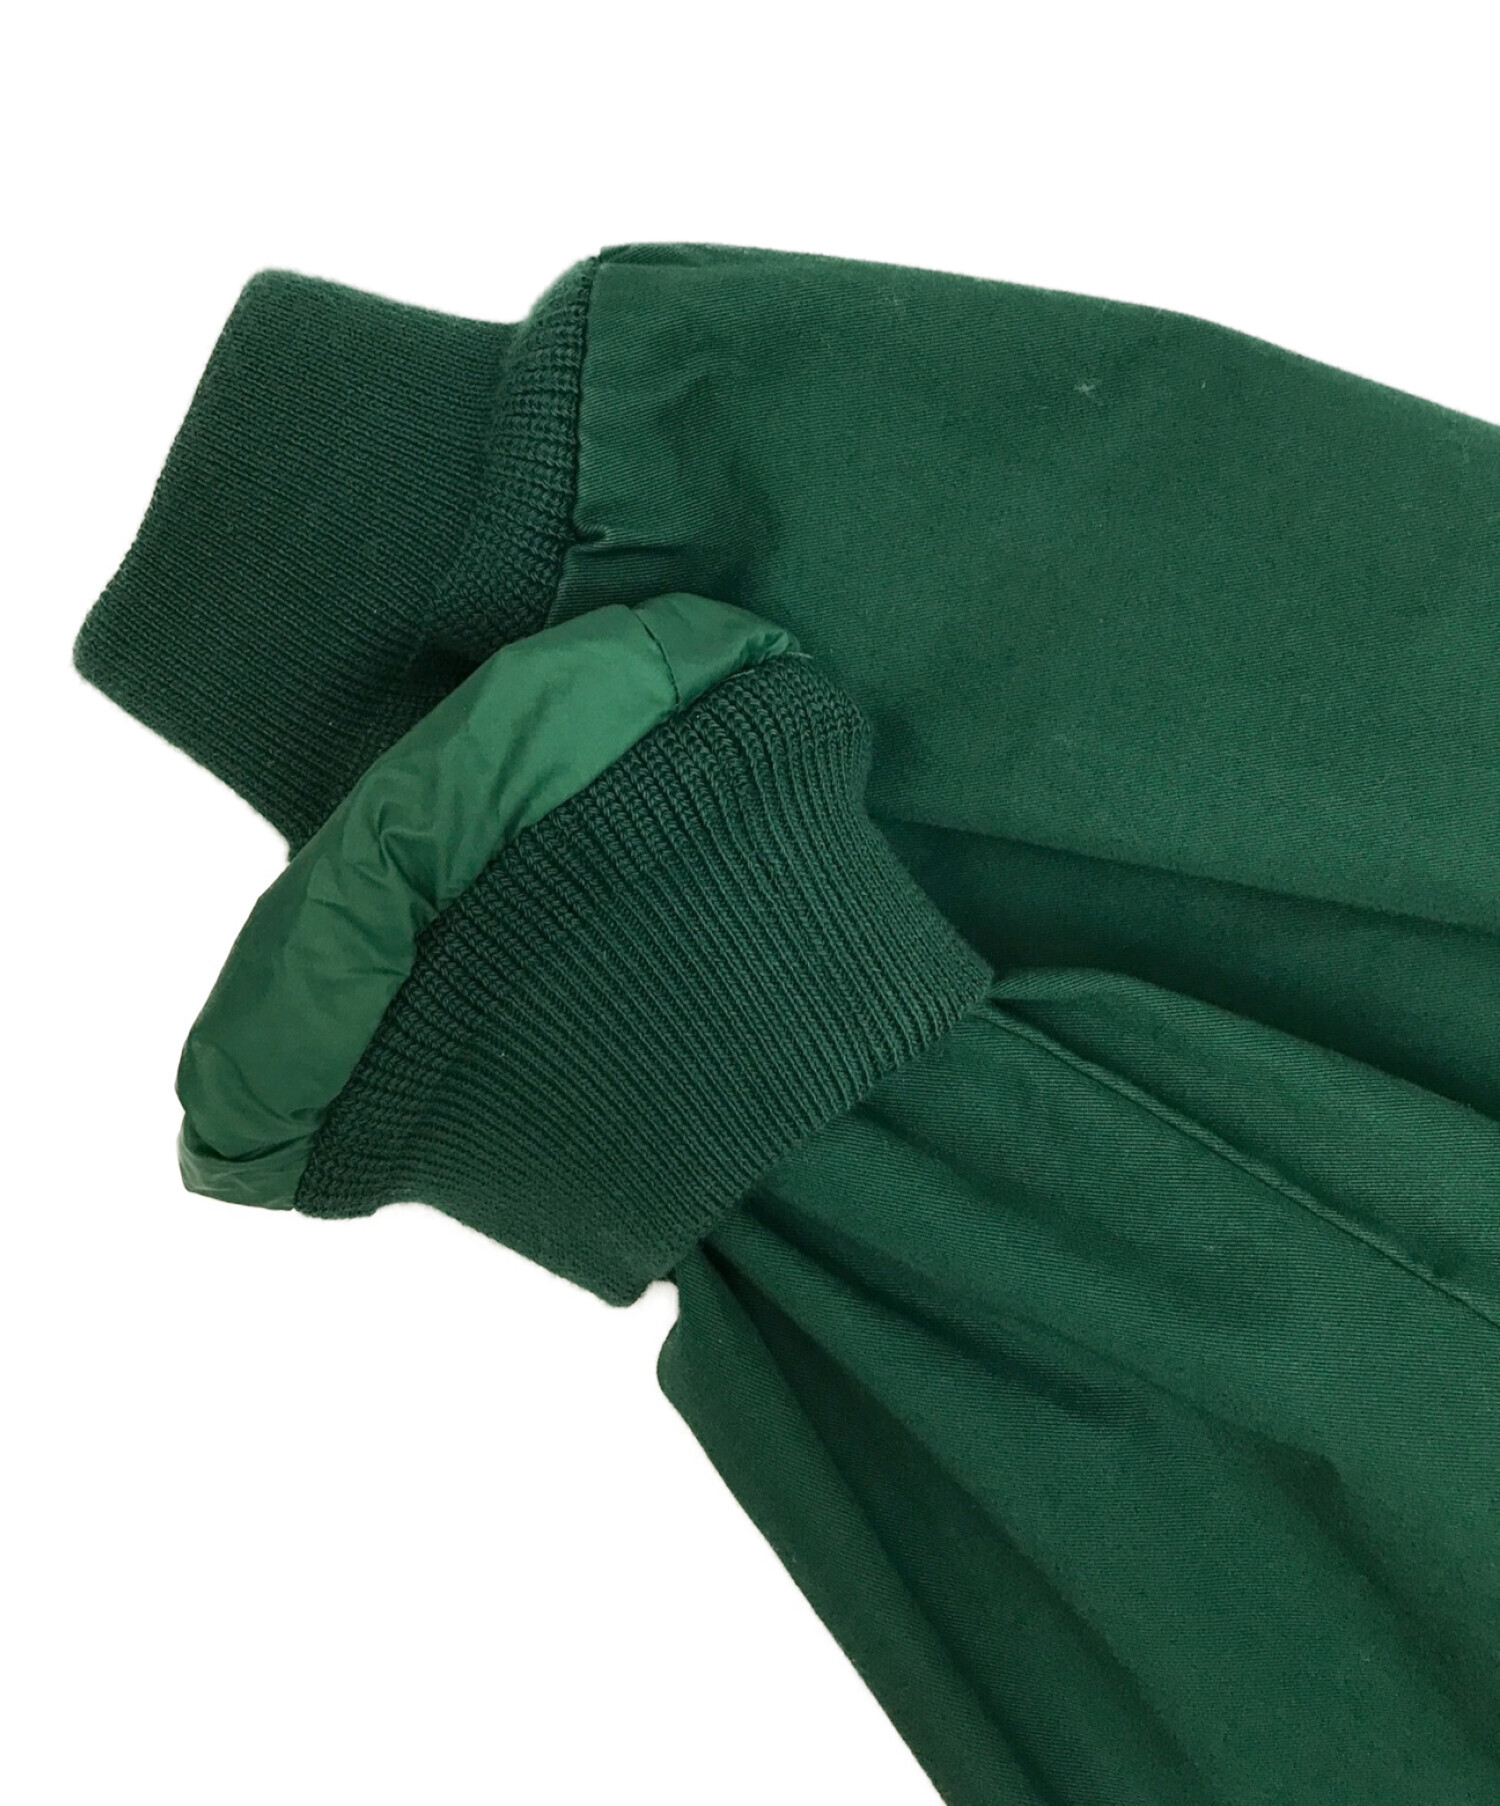 POLO RALPH LAUREN ポロ・ラルフローレン コットンツイルジャケット スイングトップ グリーン サイズ:S 未使用品